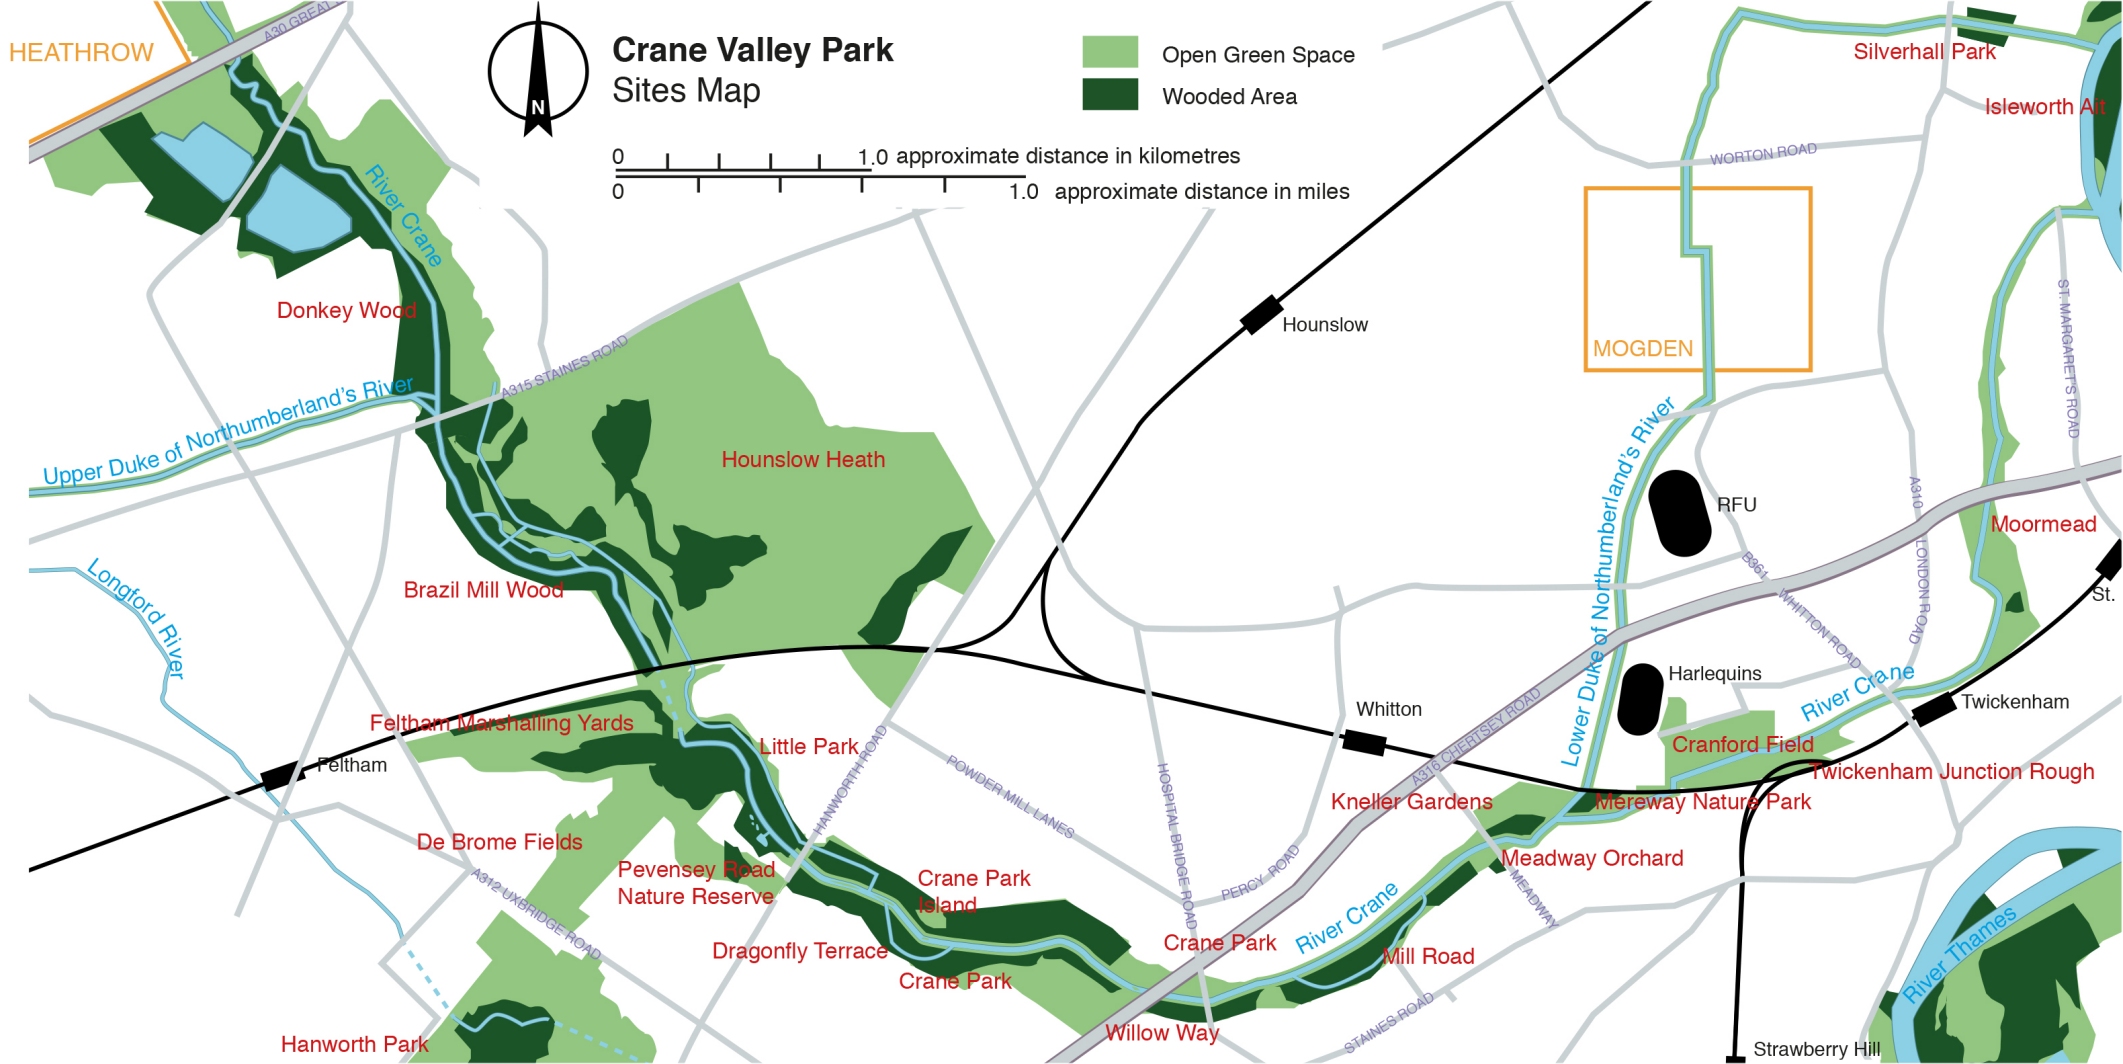 The Crane Valley